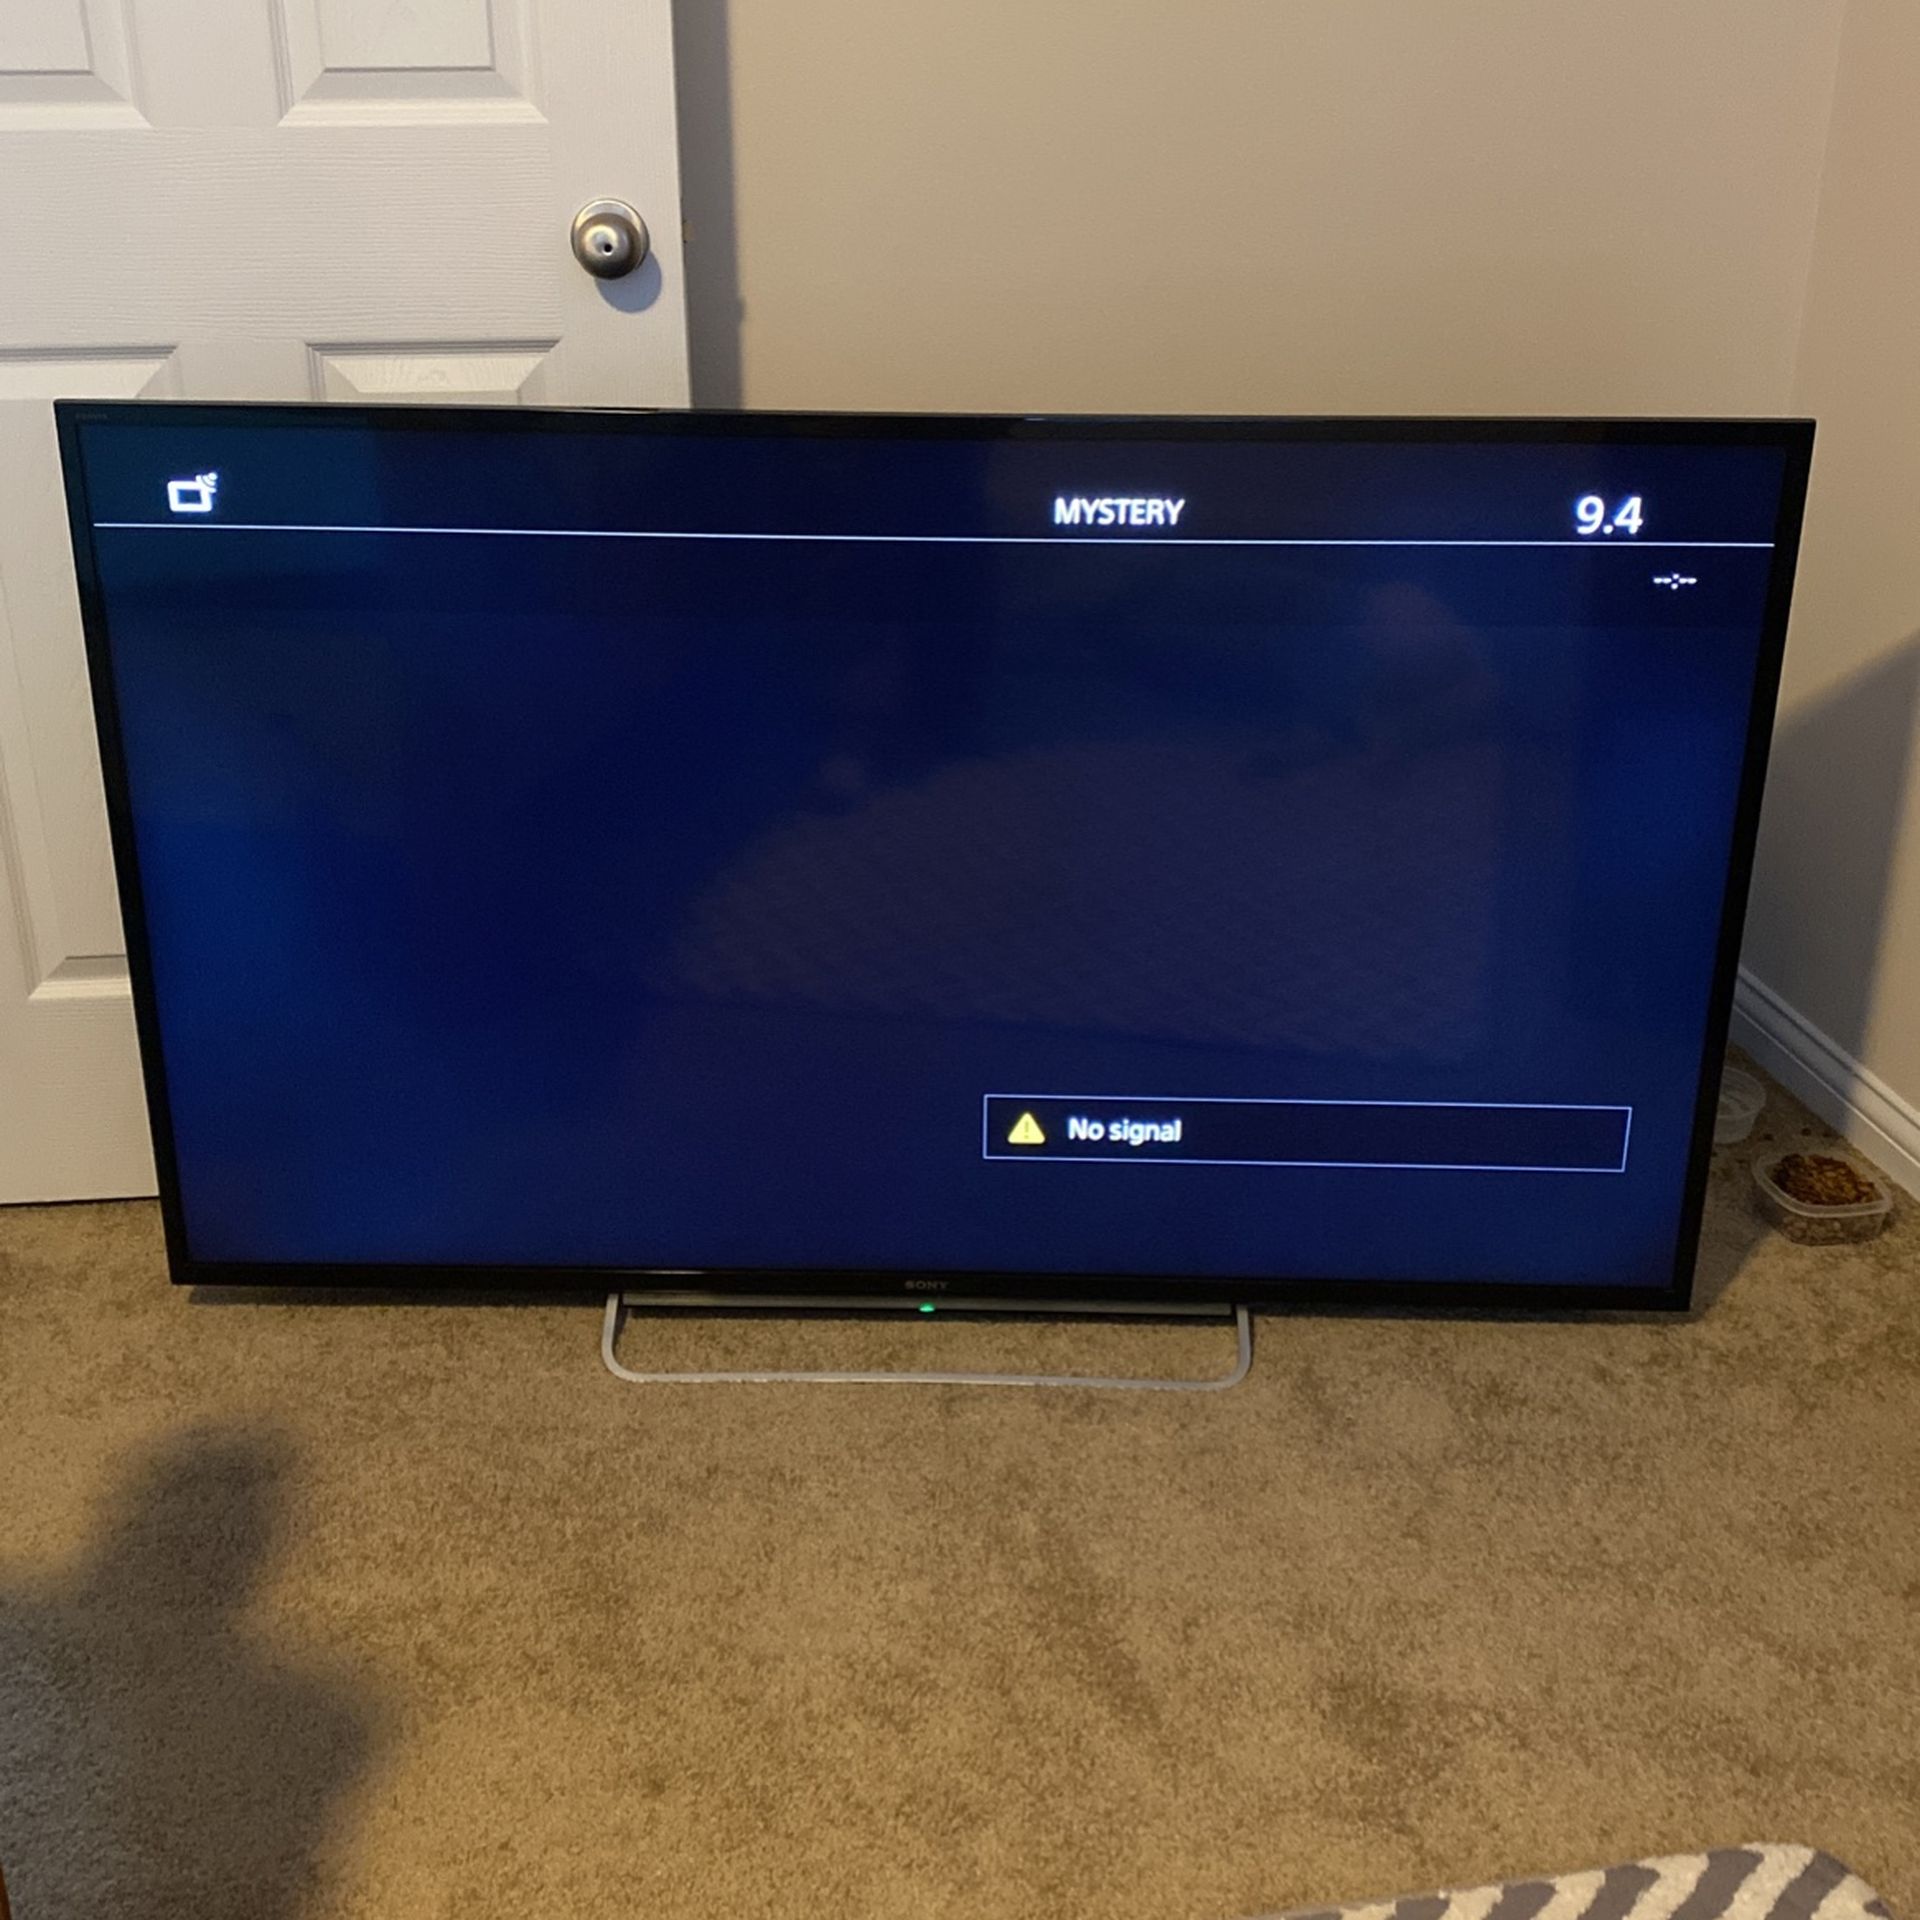 60” Sony Flat Screen Smart TV